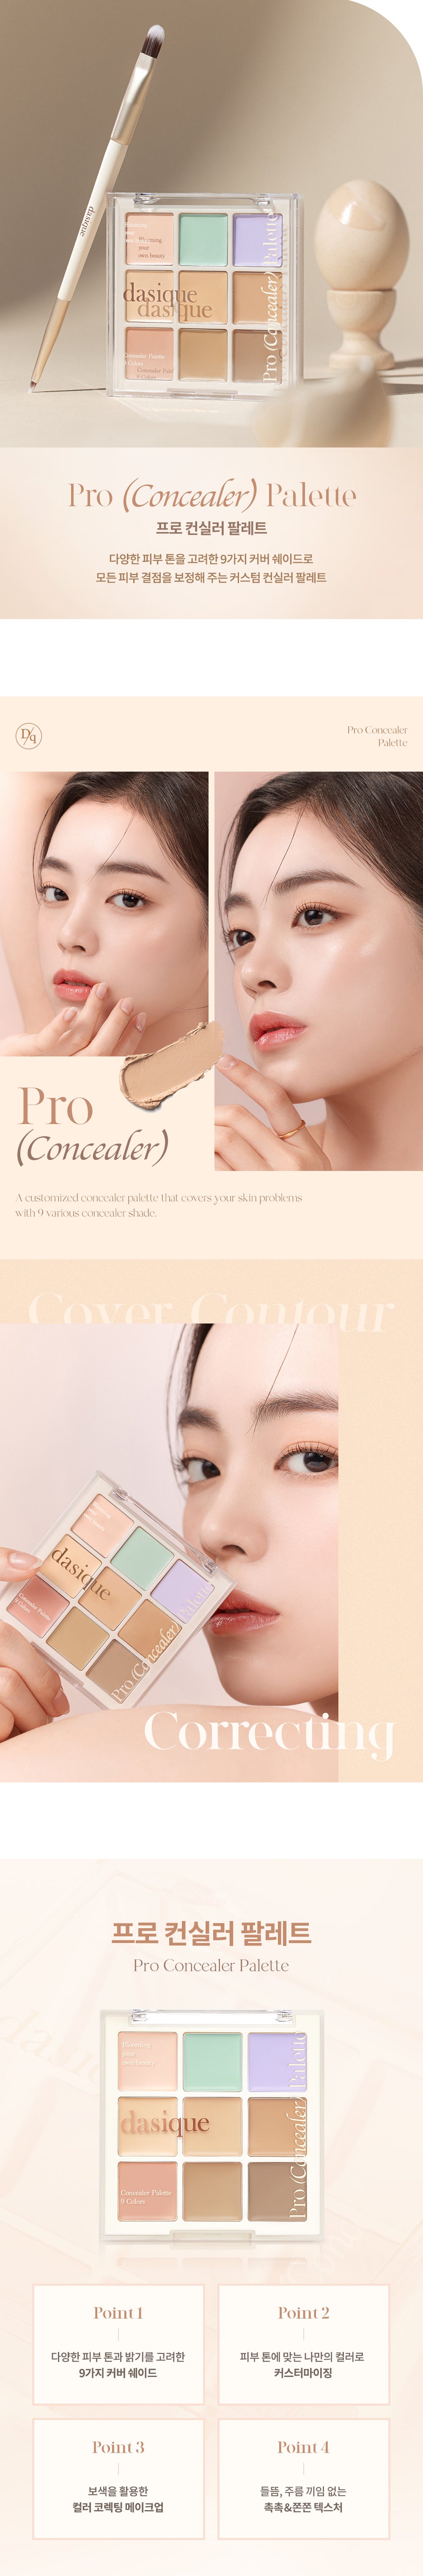 colour correct + concealer palette by @dasique @KSISTERS, Makeup Palette